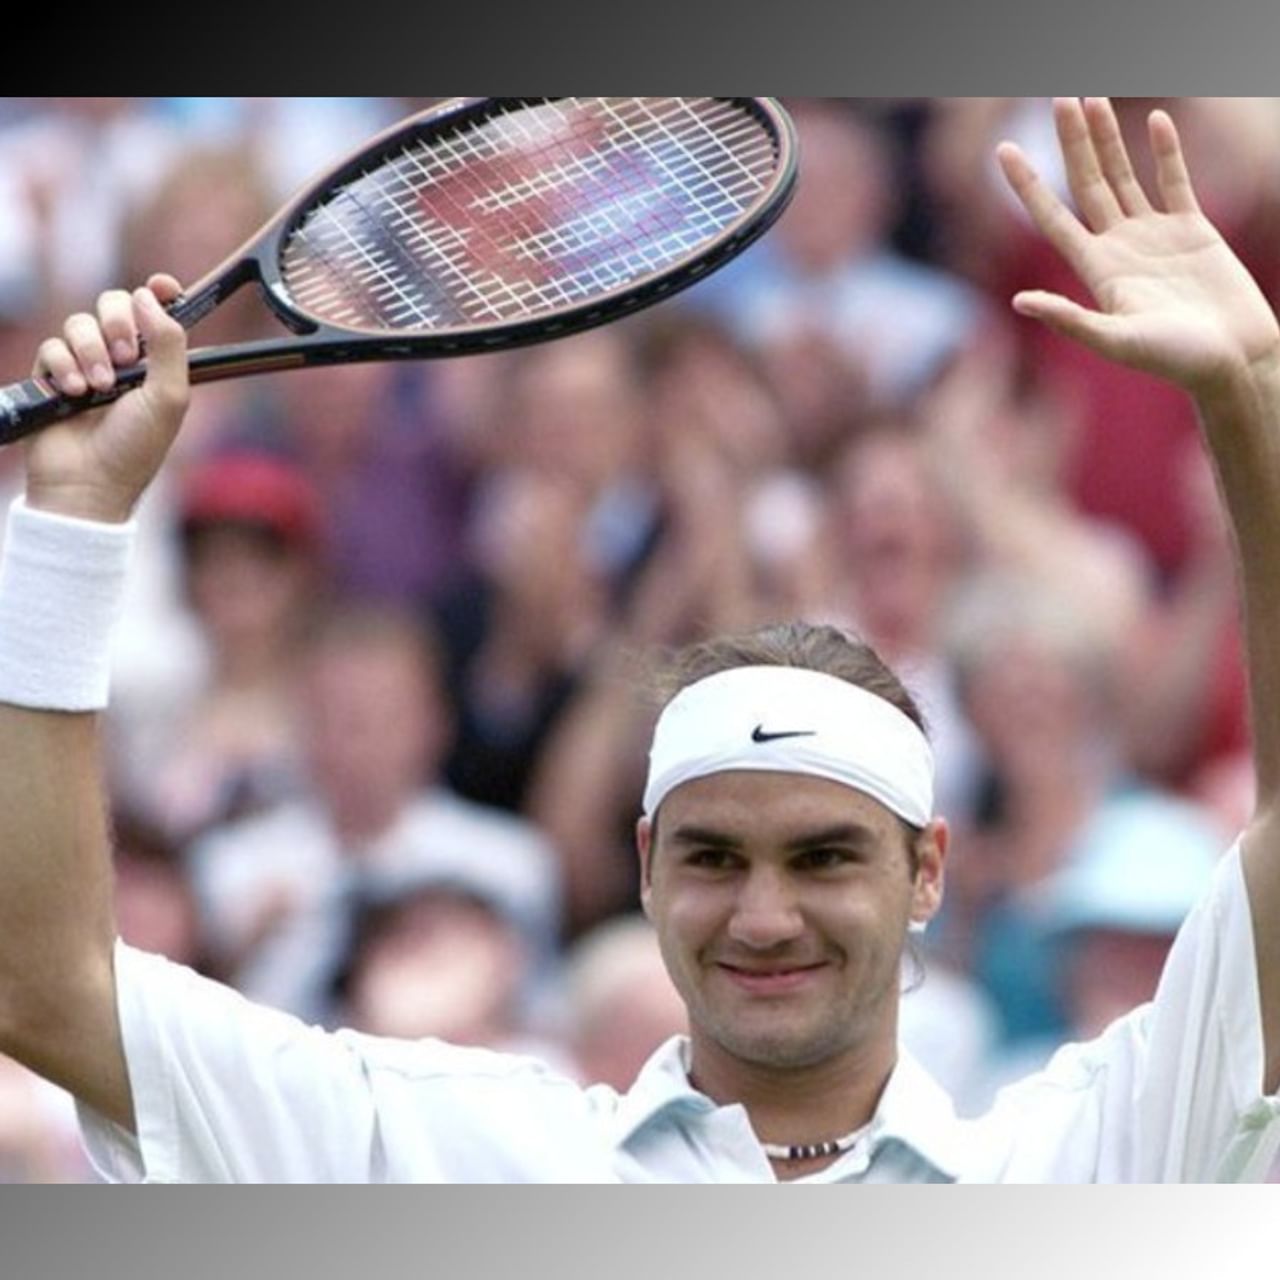  ২০০১ উইম্বলডনের (Wimbledon) চতুর্থ রাউন্ড। পিট সাম্প্রাস সেরা ছন্দে। টানা চারটি উইম্বলডন জিতেছেন। সেই মঞ্চেই উত্থান ভবিষ্যৎ কিংবদন্তির। বছর ১৯-এর রজার ফেডেরার (Roger Federer) হারান সে সময়কার সেরা খেলোয়াড় পিট সাম্প্রাসকে। ম্যাচ শেষে তরুণ প্রতিপক্ষ প্রসঙ্গে সাম্প্রাস বলেছিলেন, 'অনেক তরুণ খেলোয়াড় উঠে আসছে, তবে রজার বিশেষ প্রতিভাবান। আমার মতোই আবেগ দিয়ে খেলে।'(ছবি: টুইটার)